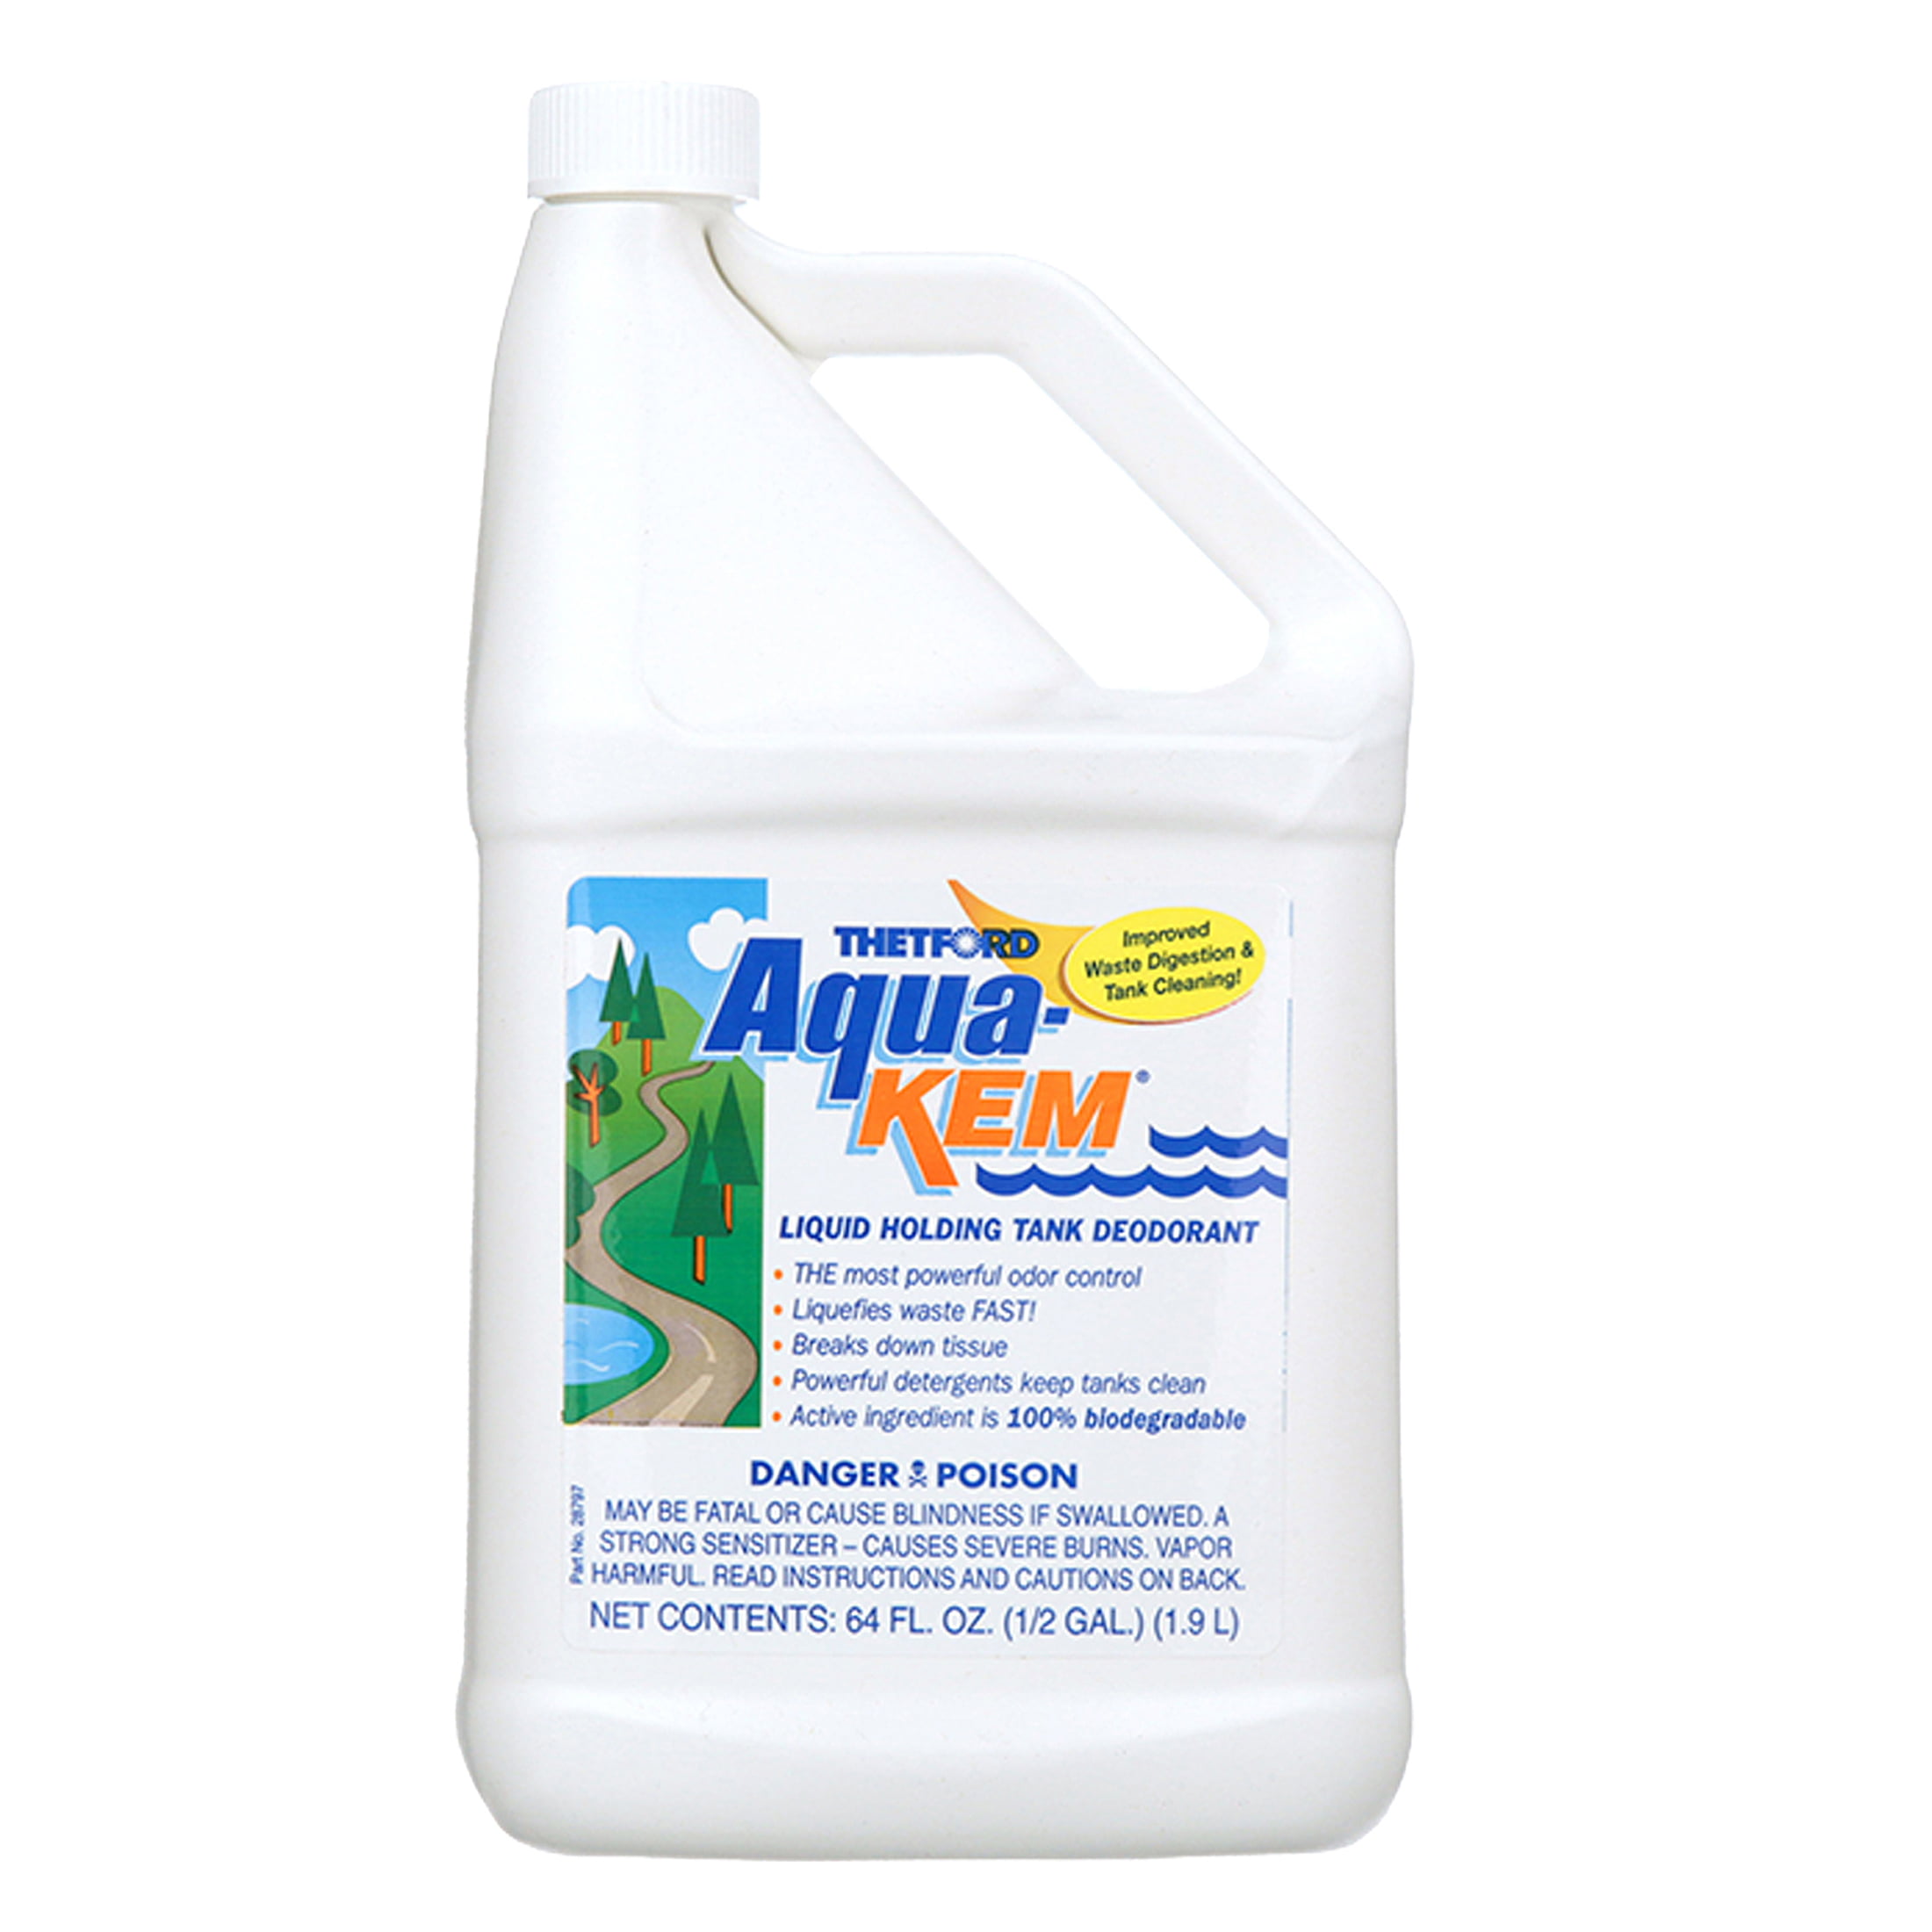 Aqua-Kem RV Holding Tank Treatment - Deodorant / Waste Digester